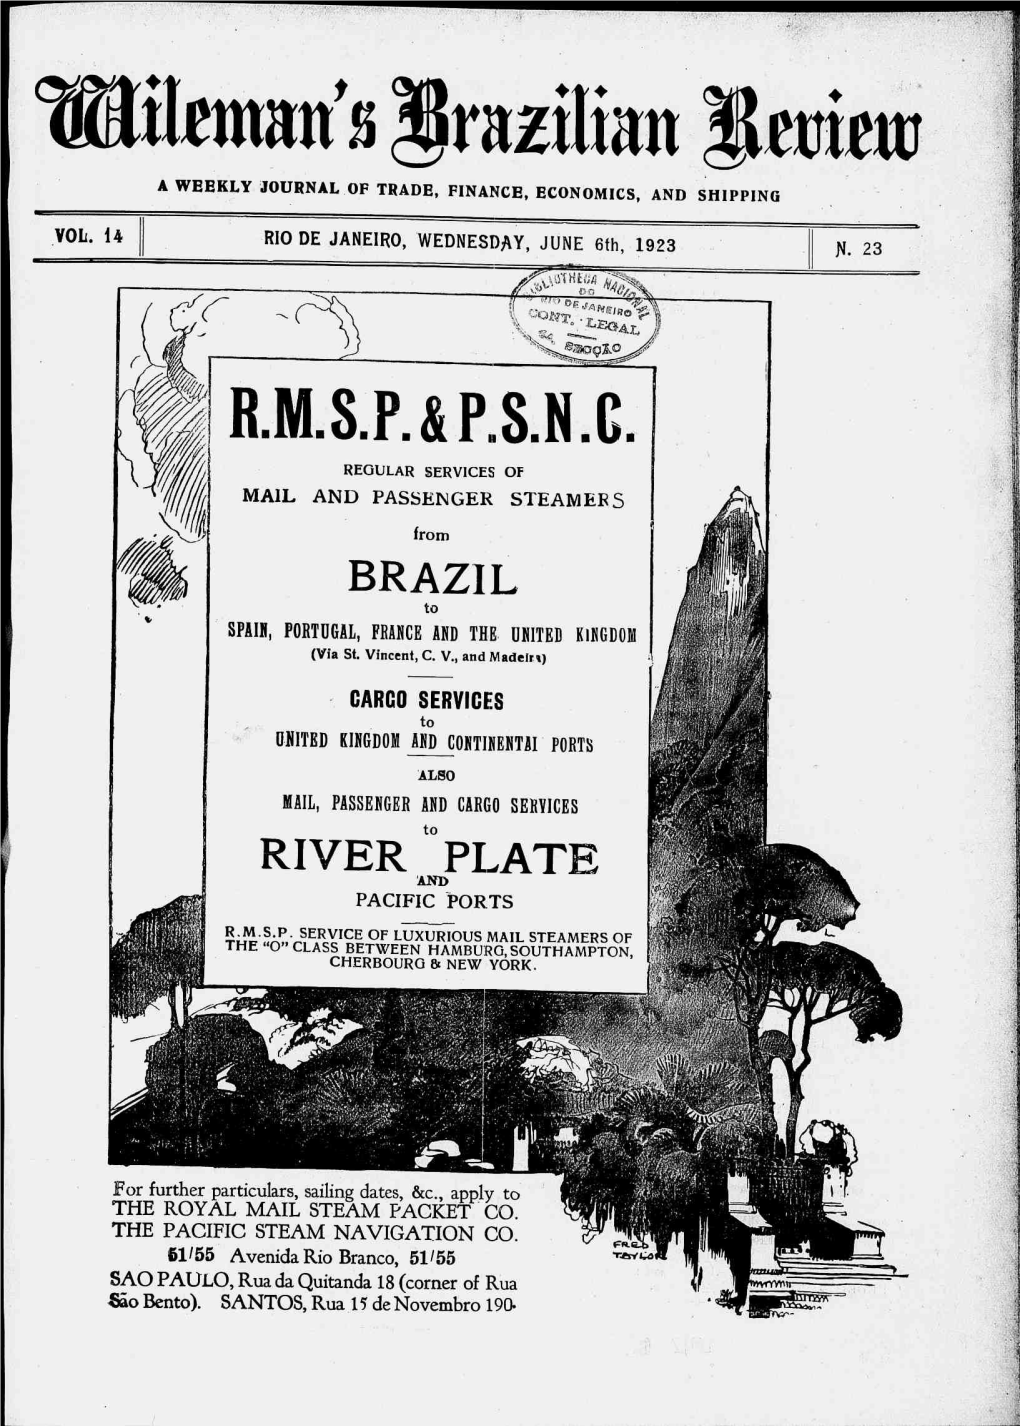 VOL. 14 DE JANEIRO, WEDNESDAY, JUNE 6Th, 1923 Fl. 23